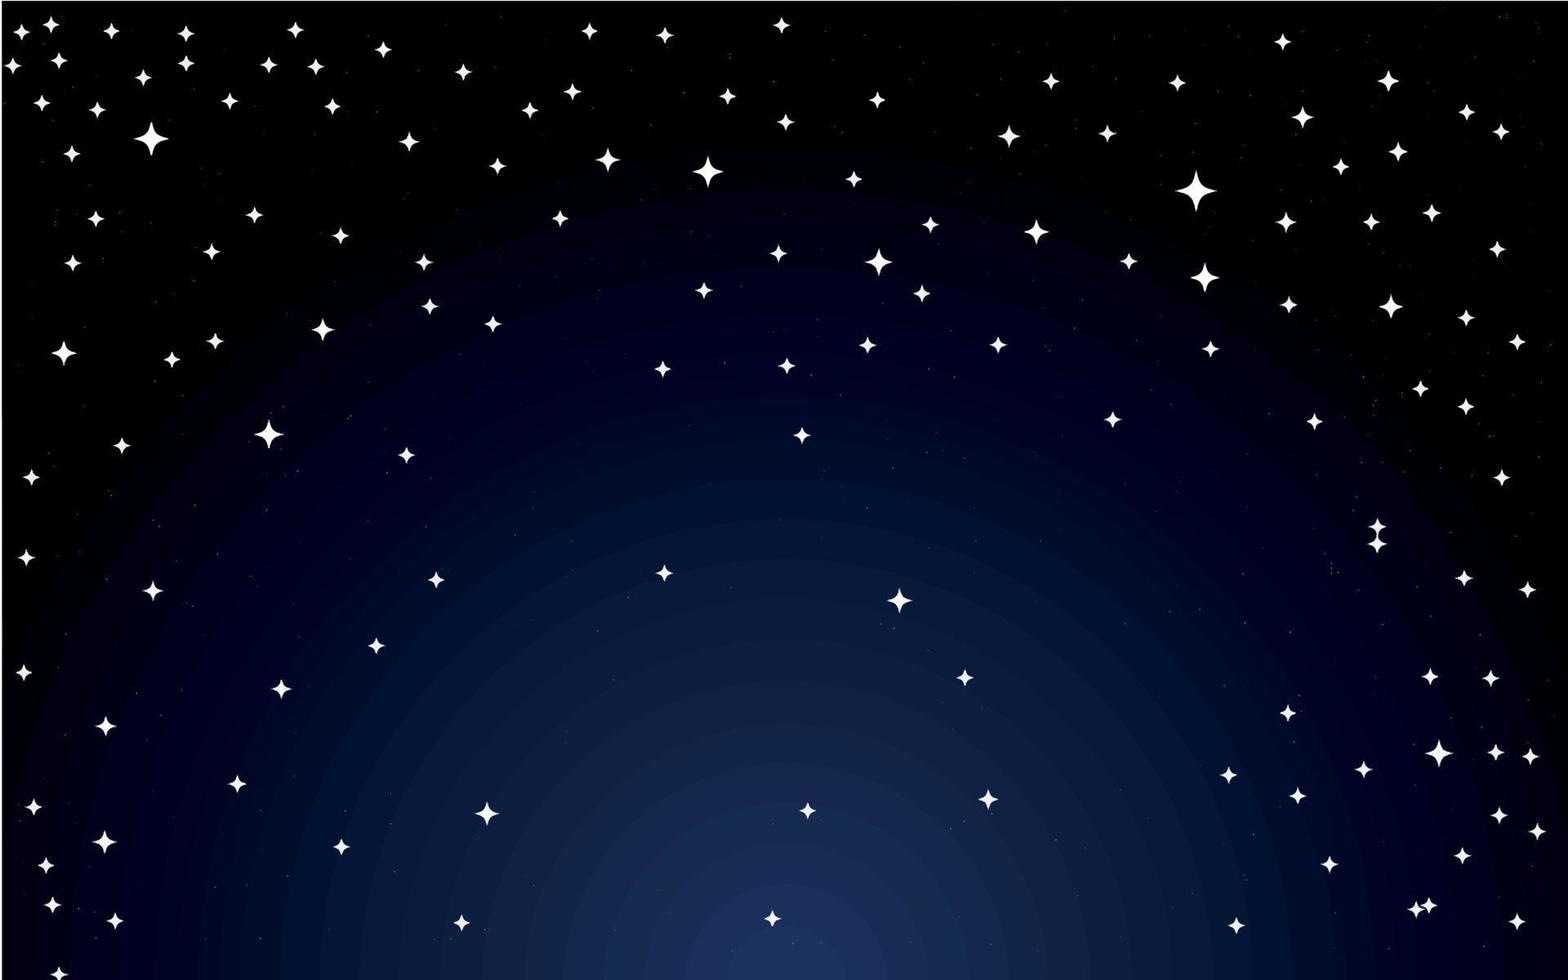 Nachthimmel Sterne fallen Wiegenlied Tapete blau schwarz dunklen Hintergrund vektor